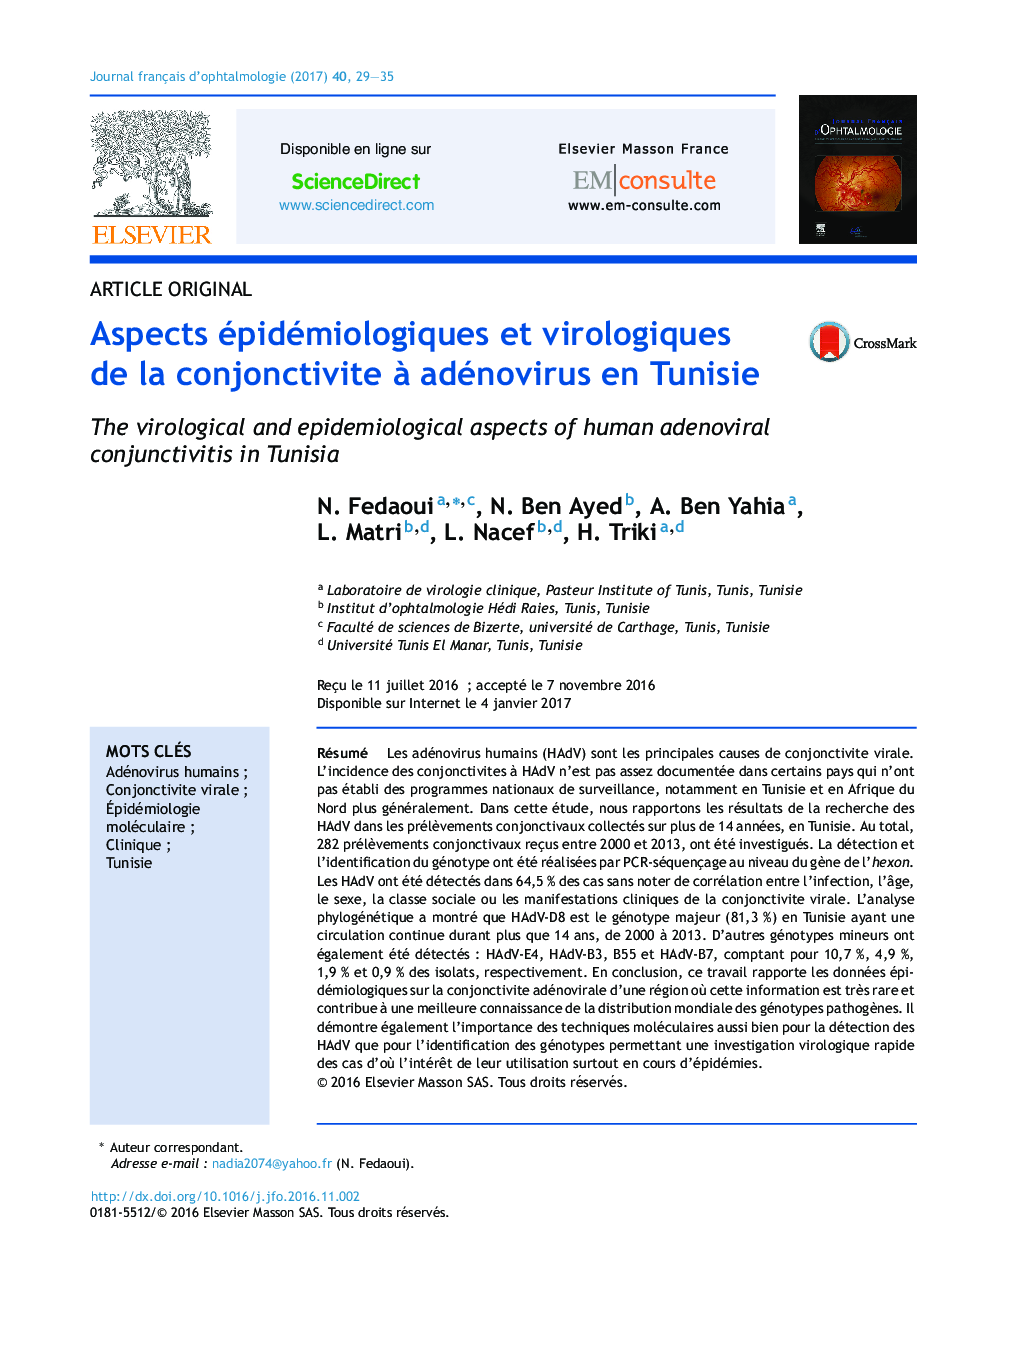 Aspects épidémiologiques et virologiques de la conjonctivite Ã  adénovirus en Tunisie